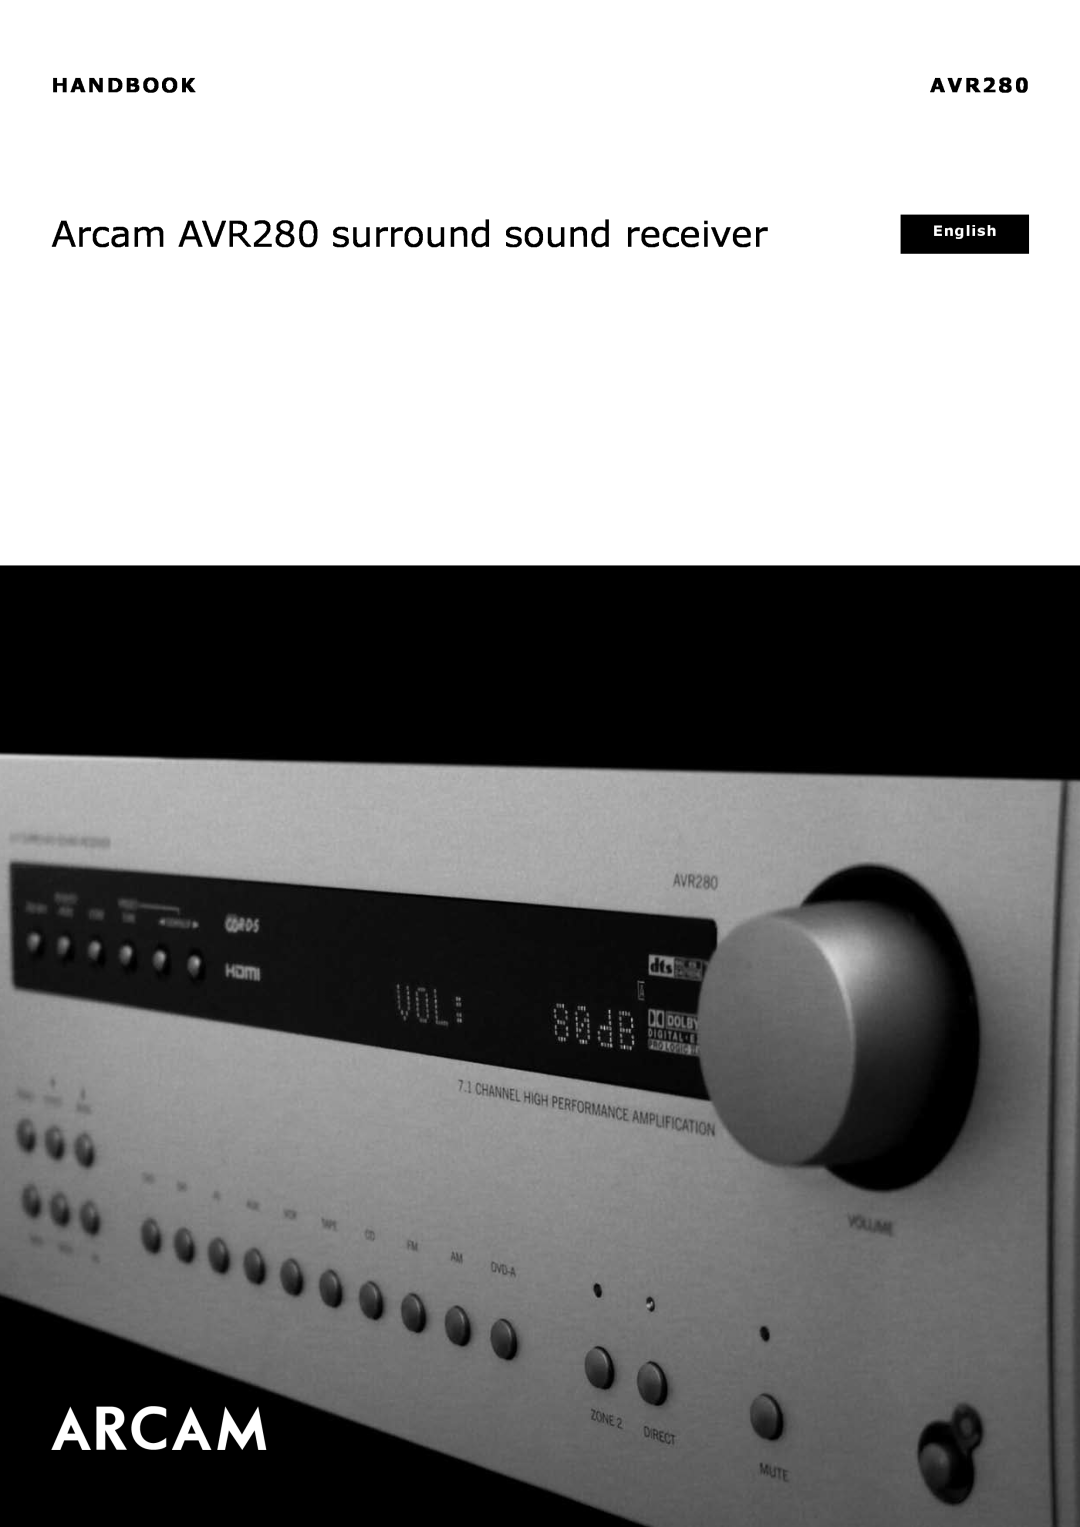 Arcam manual Handbook, Arcam AVR280 surround sound receiver, English 